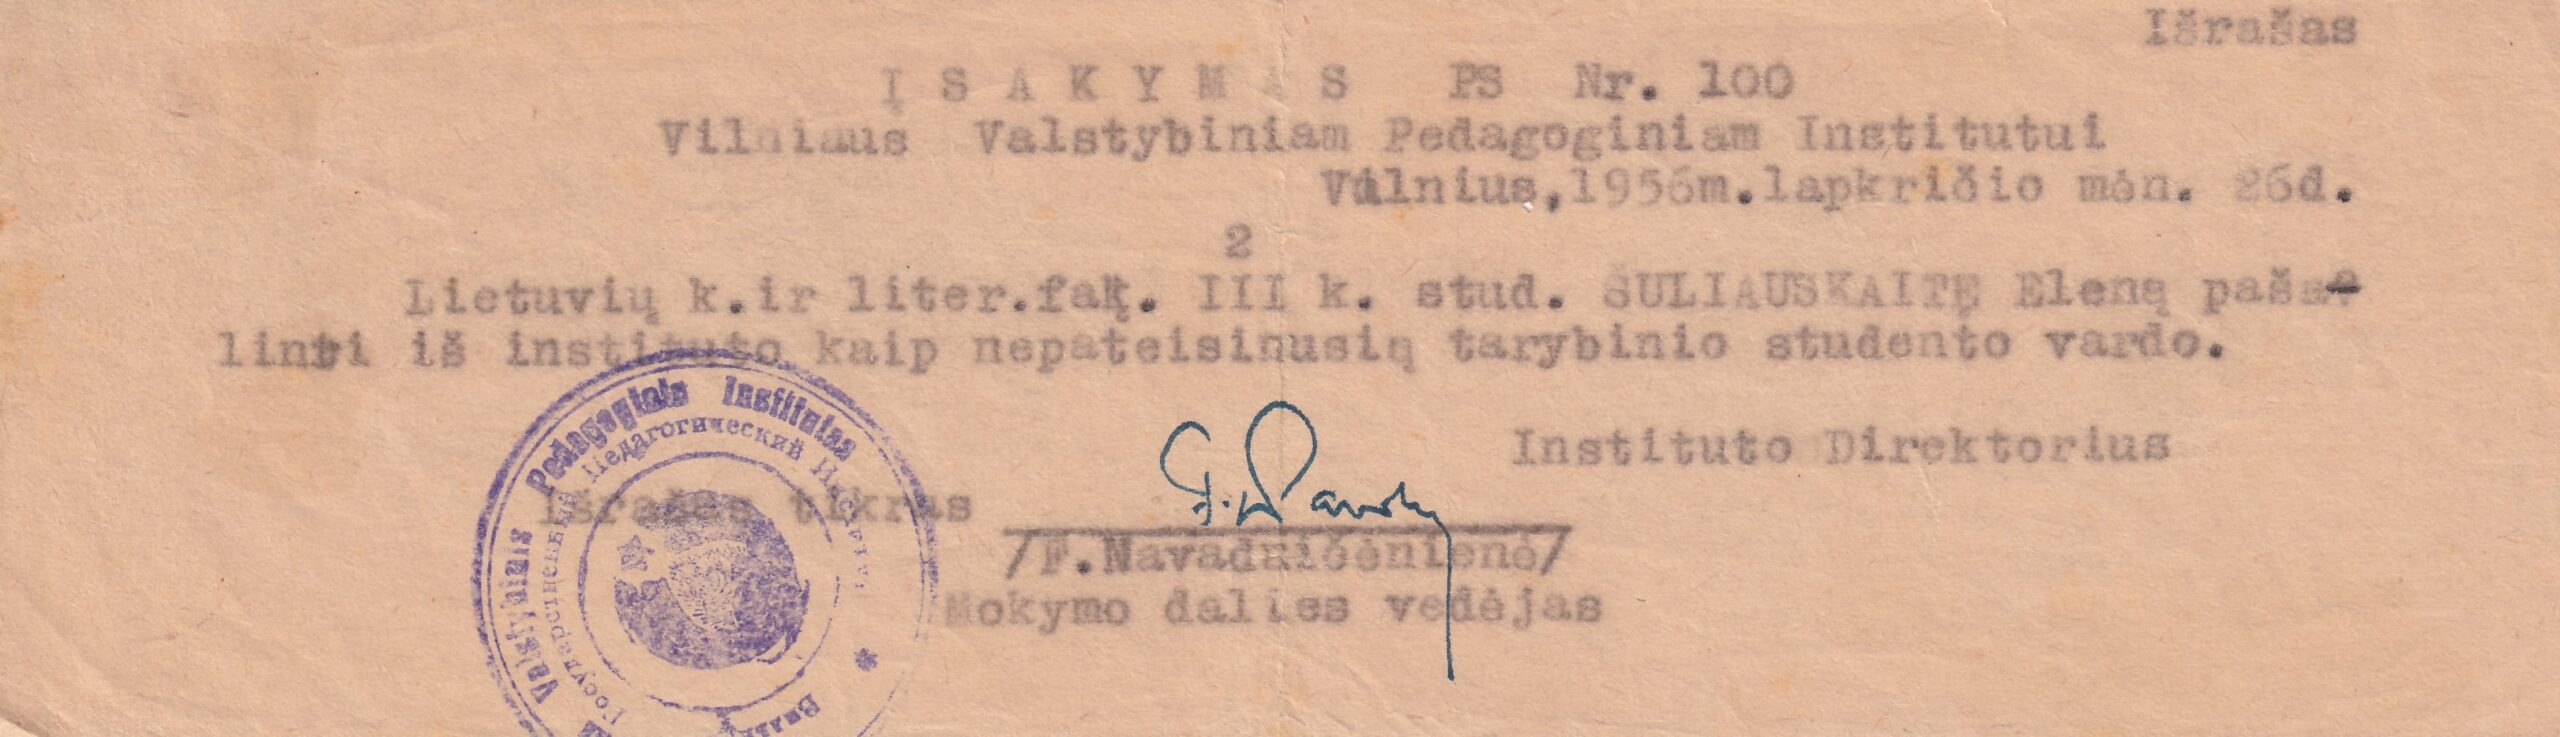 3.Vilniaus pedagoginio instituto direktoriaus įsakymo išrašas Nr. 100. 1956 11 26 | E. Šiuliauskaitės asm. archyvo nuotr.